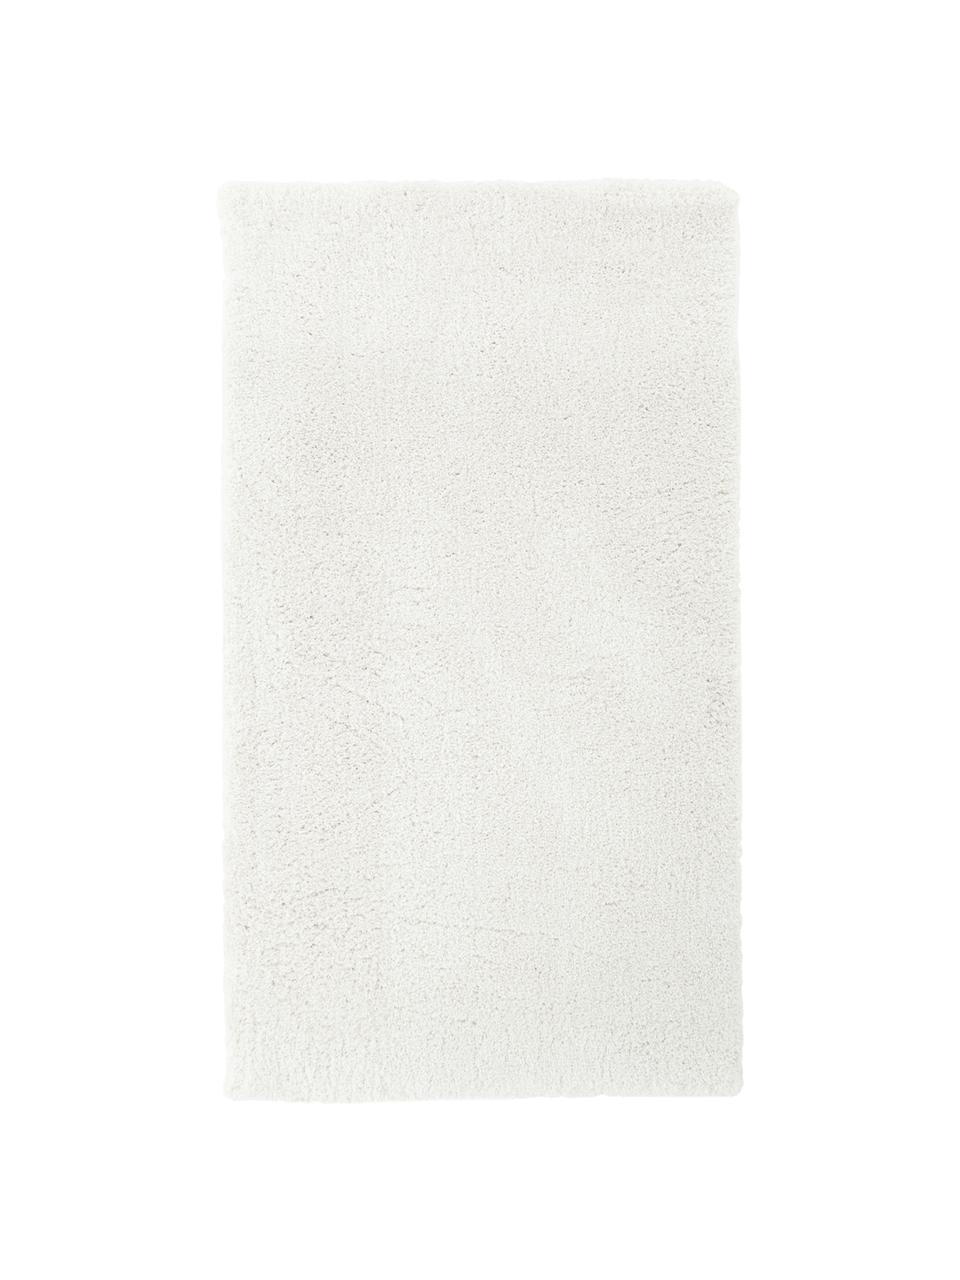 Pluizig hoogpolig vloerkleed Leighton in crèmekleur, Onderzijde: 70% polyester, 30% katoen, Crèmewit, B 400 x L 500 cm (maat XXL)